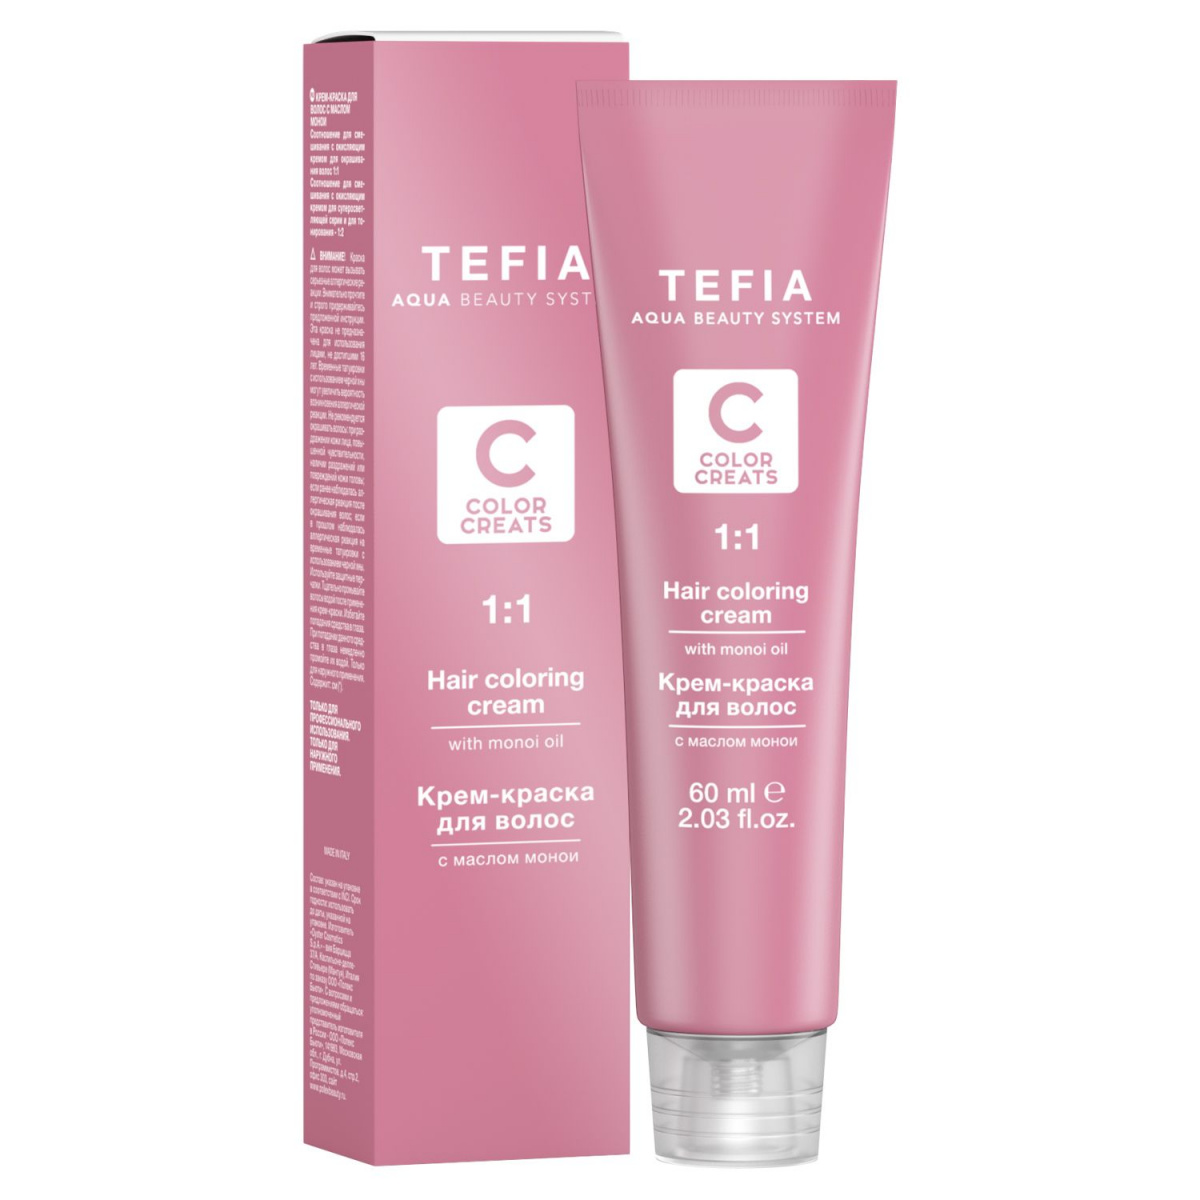 Tefia Color Creats - Крем-краска для волос с маслом монои 4.5 брюнет красный 60 мл Tefia (Италия) купить по цене 387 руб.